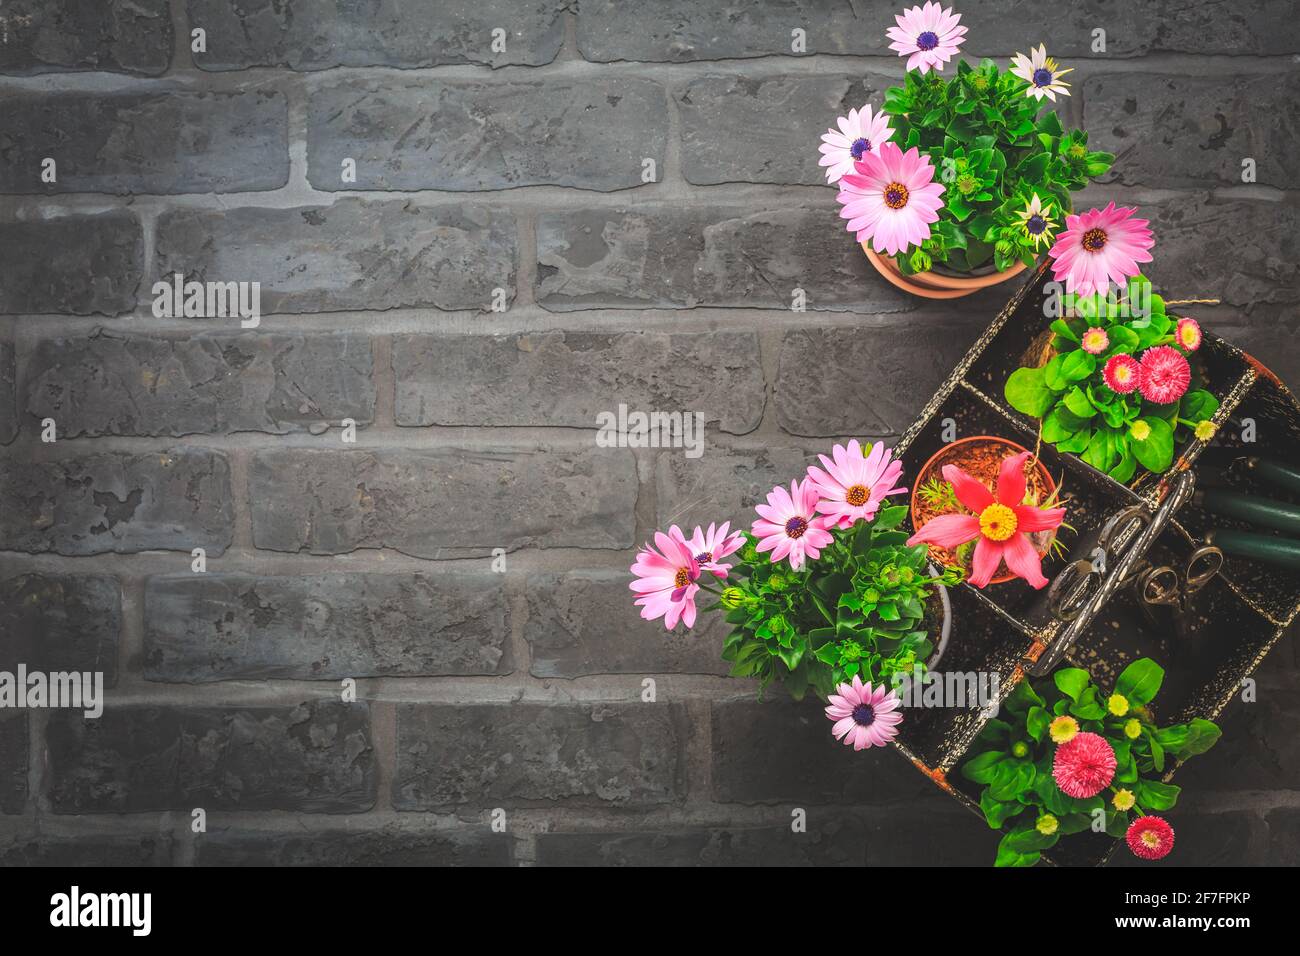 Boîte à outils avec fleurs de printemps en pot, outils de jardinage sur fond de pierre noire - jardinage et concept de printemps, plantation de fleurs Banque D'Images